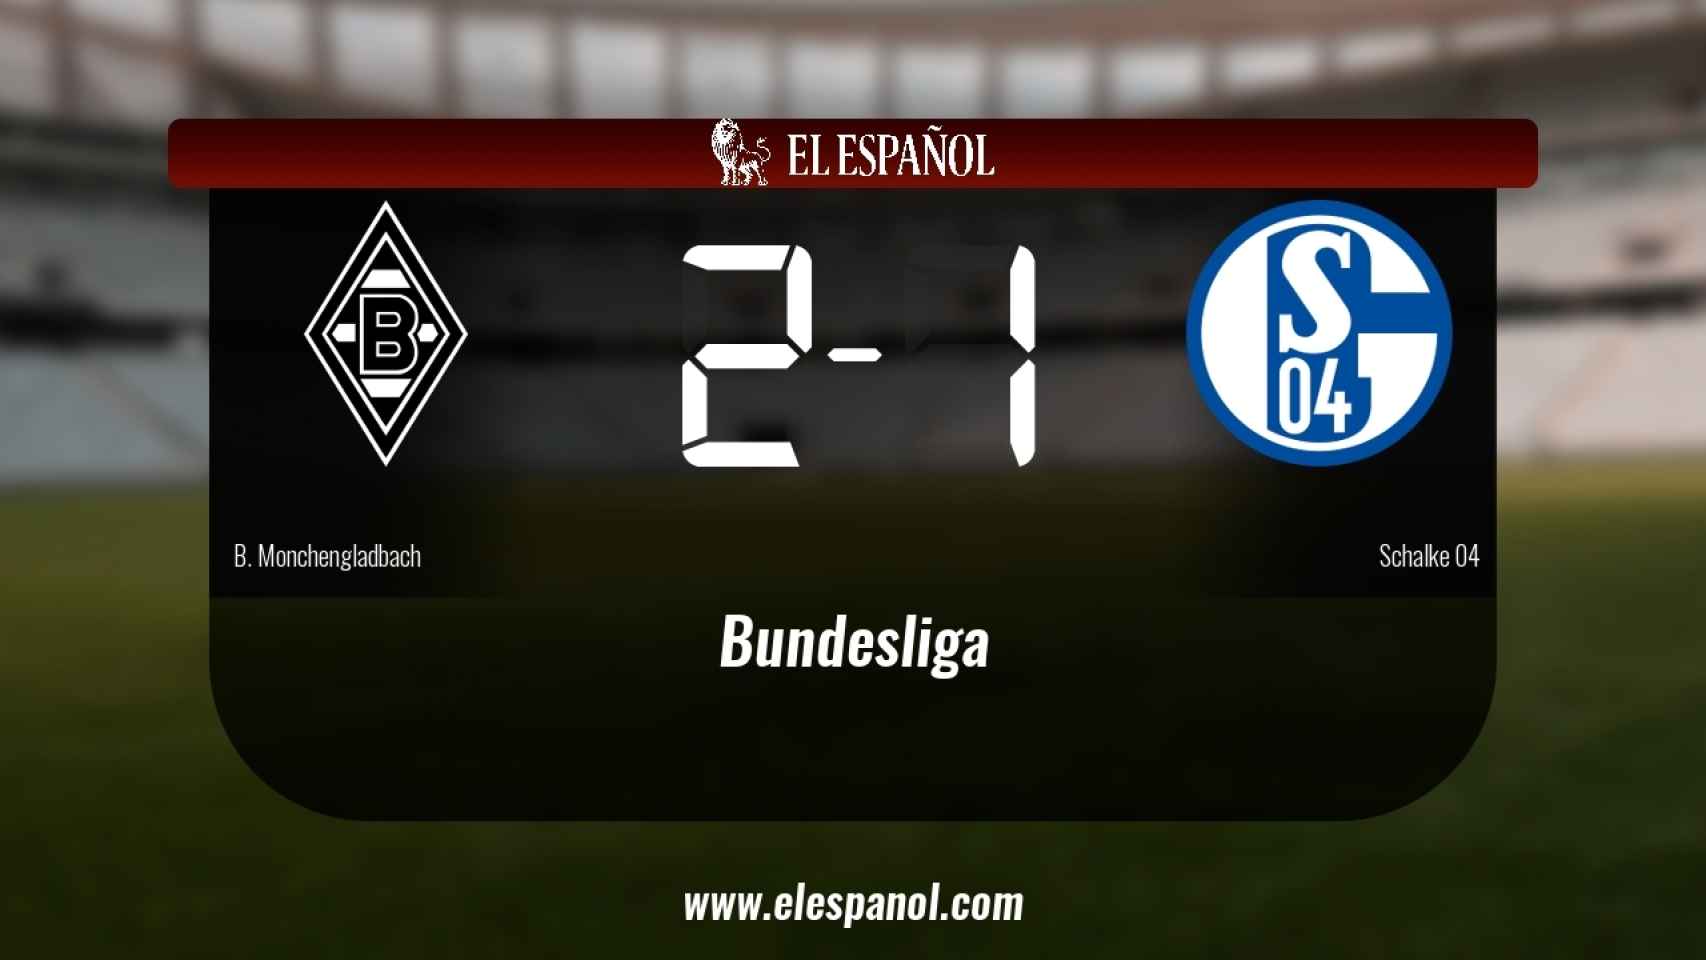 Victoria 2-1 del Borussia Monchengladbach frente al Schalke 04